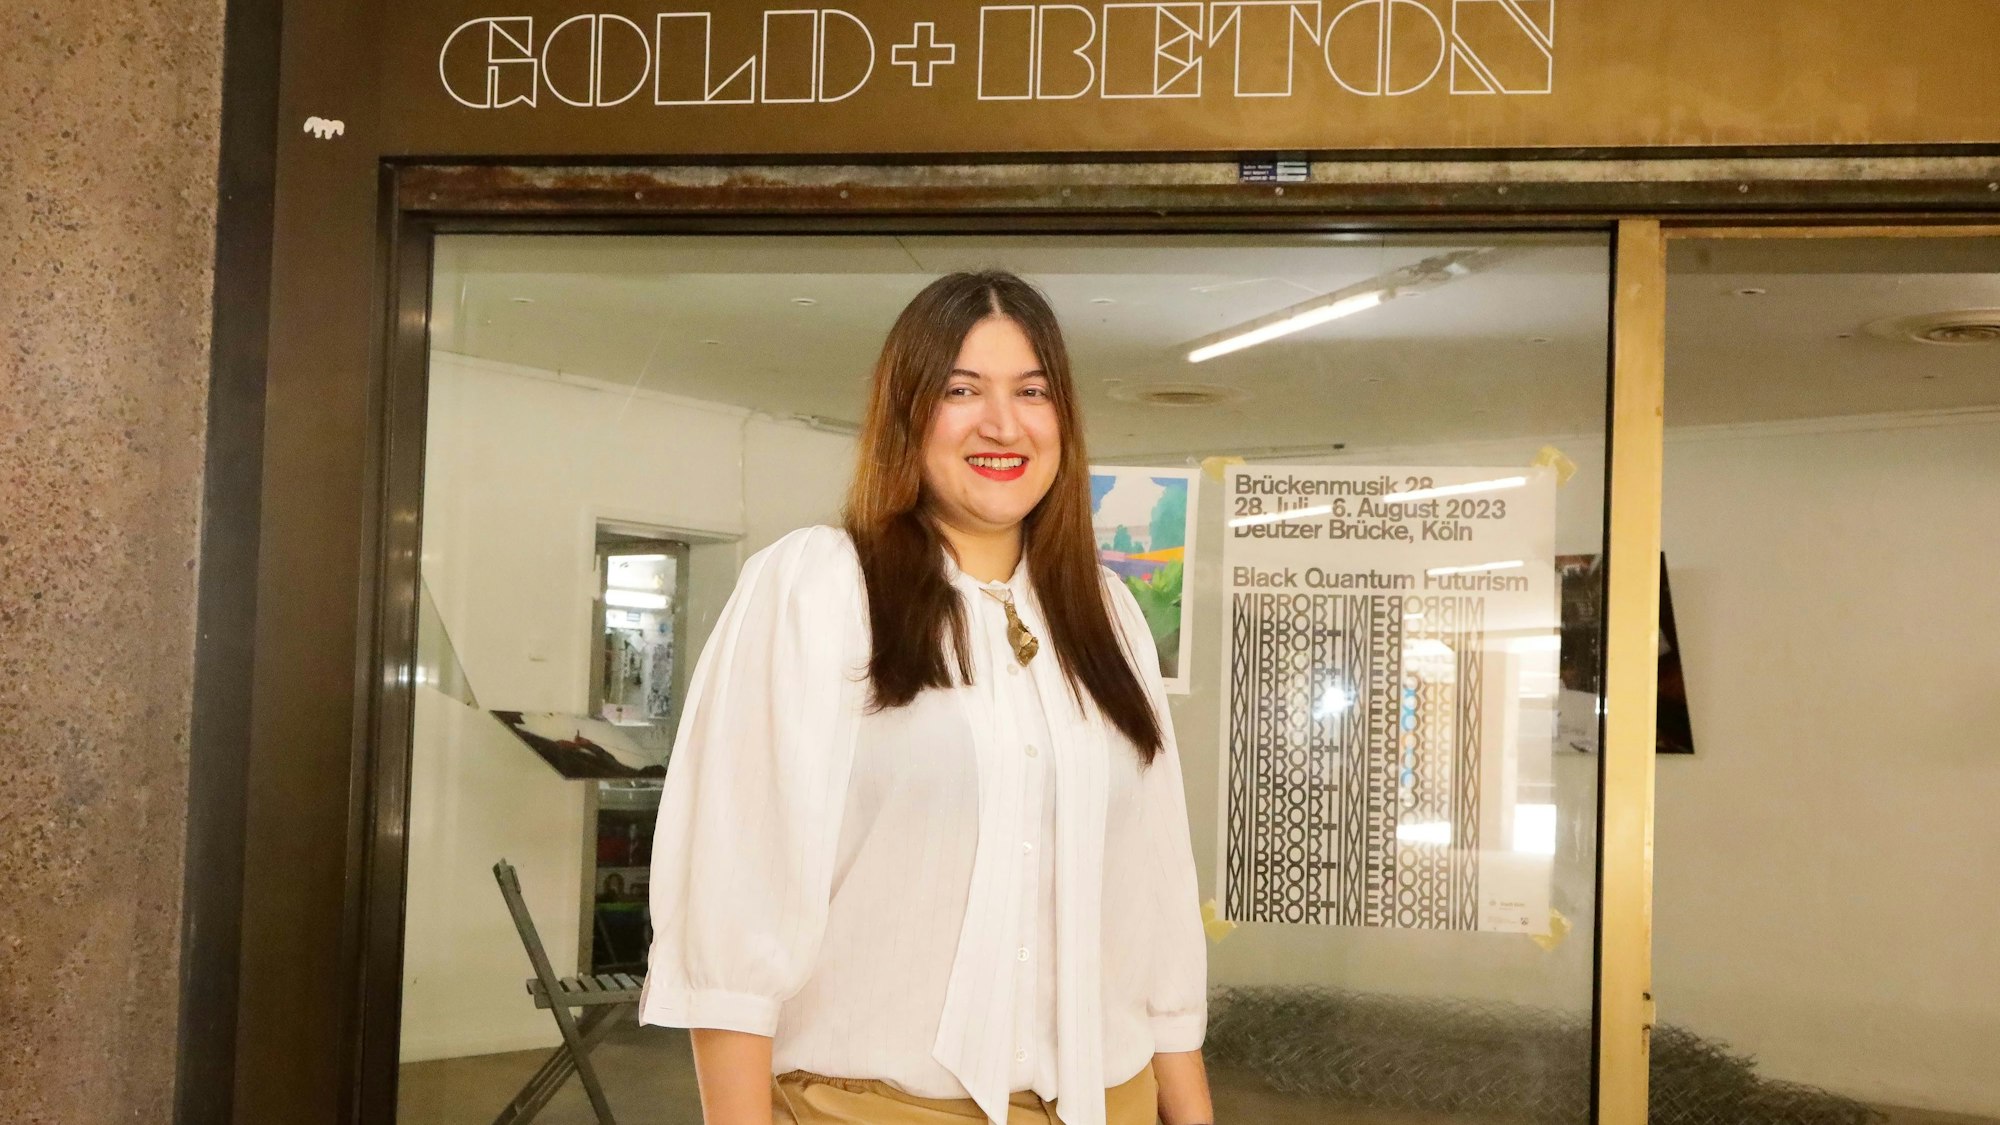 Meryem Erkus steht vor der Galerie „GOLD+BETON". Sie trägt ein weißes Hemd. Hinter ihr bewirbt auf einer Scheibe ein Plakat die Veranstaltung „Brückenmusik“.